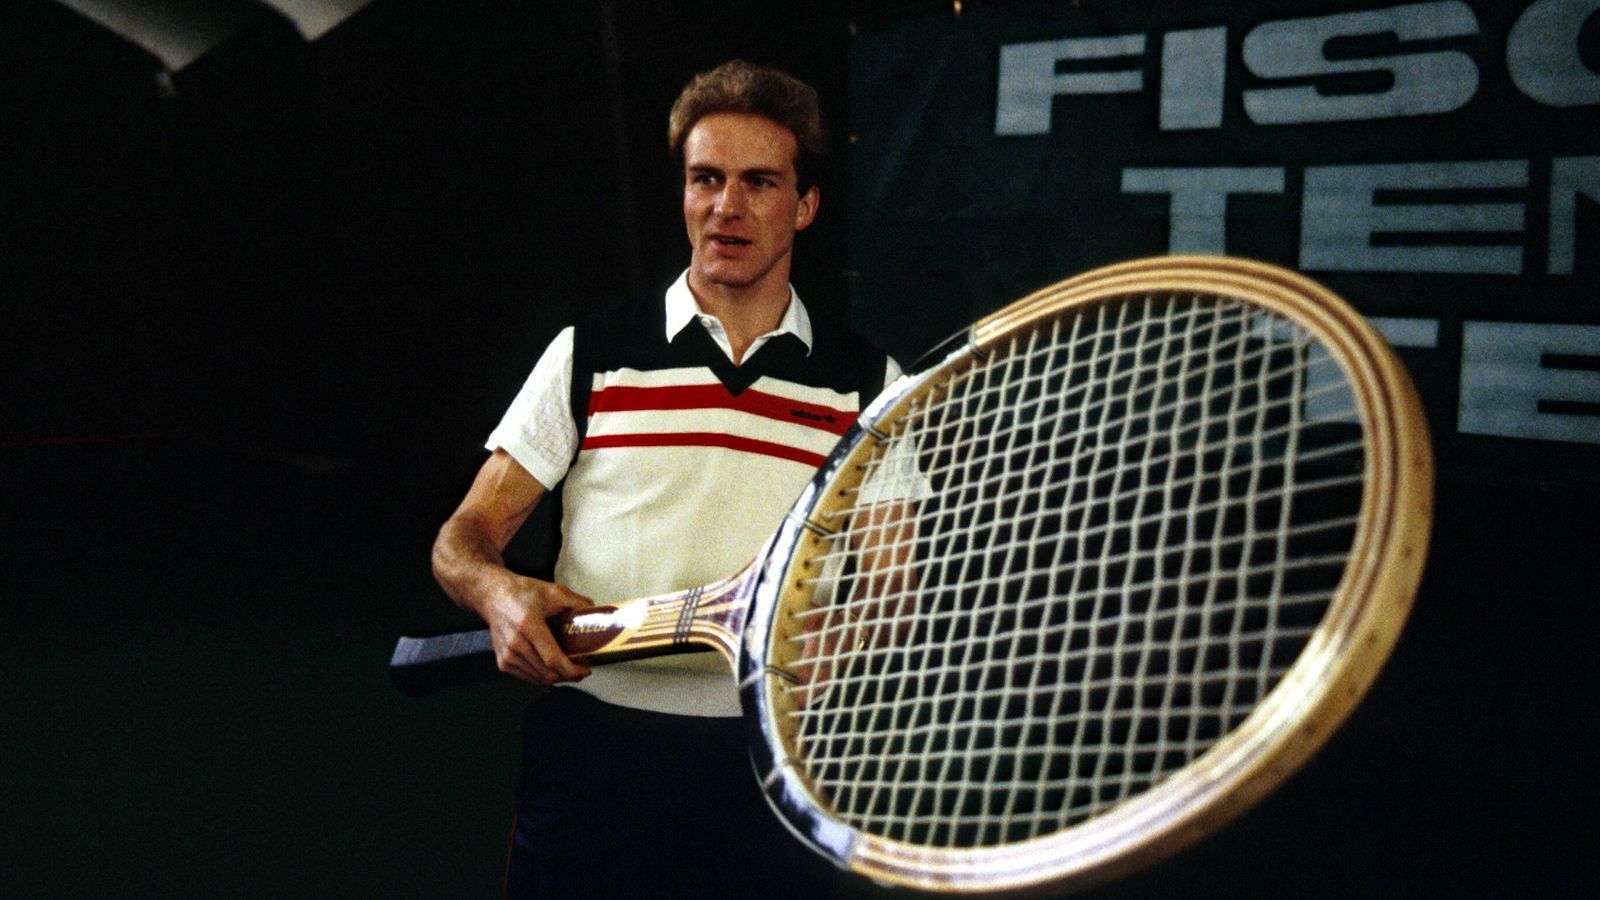 
                <strong>Rummenigges falsche Vorrausagen von 1991</strong><br>
                Als Karl-Heinz Rummenigge im April 1991 bei TV-Moderator Karl Senne zu Gast war, hätte er mit seinen Einschätzungen für die anstehenden Sieger in Bundesliga und Tennis-Grand-Slam nicht weiter von der Wahrheit entfernt sein. "Kaiserslautern wird nicht Meister. Das wäre so, als wenn Michael Stich Wimbledon gewinnen würde", legte sich Rummenigge, der im November 1991 als Vize-Präsident zu den Bayern zurückkehrte, fest. Blöd gelaufen für ihn! Nur wenige Wochen nach seinem provokanten TV-Auftritt wurde der FCK tatsächlich Meister und obendrein triumphierte Michael Stich beim Rasen-Major-Turnier von Wimbledon.
              